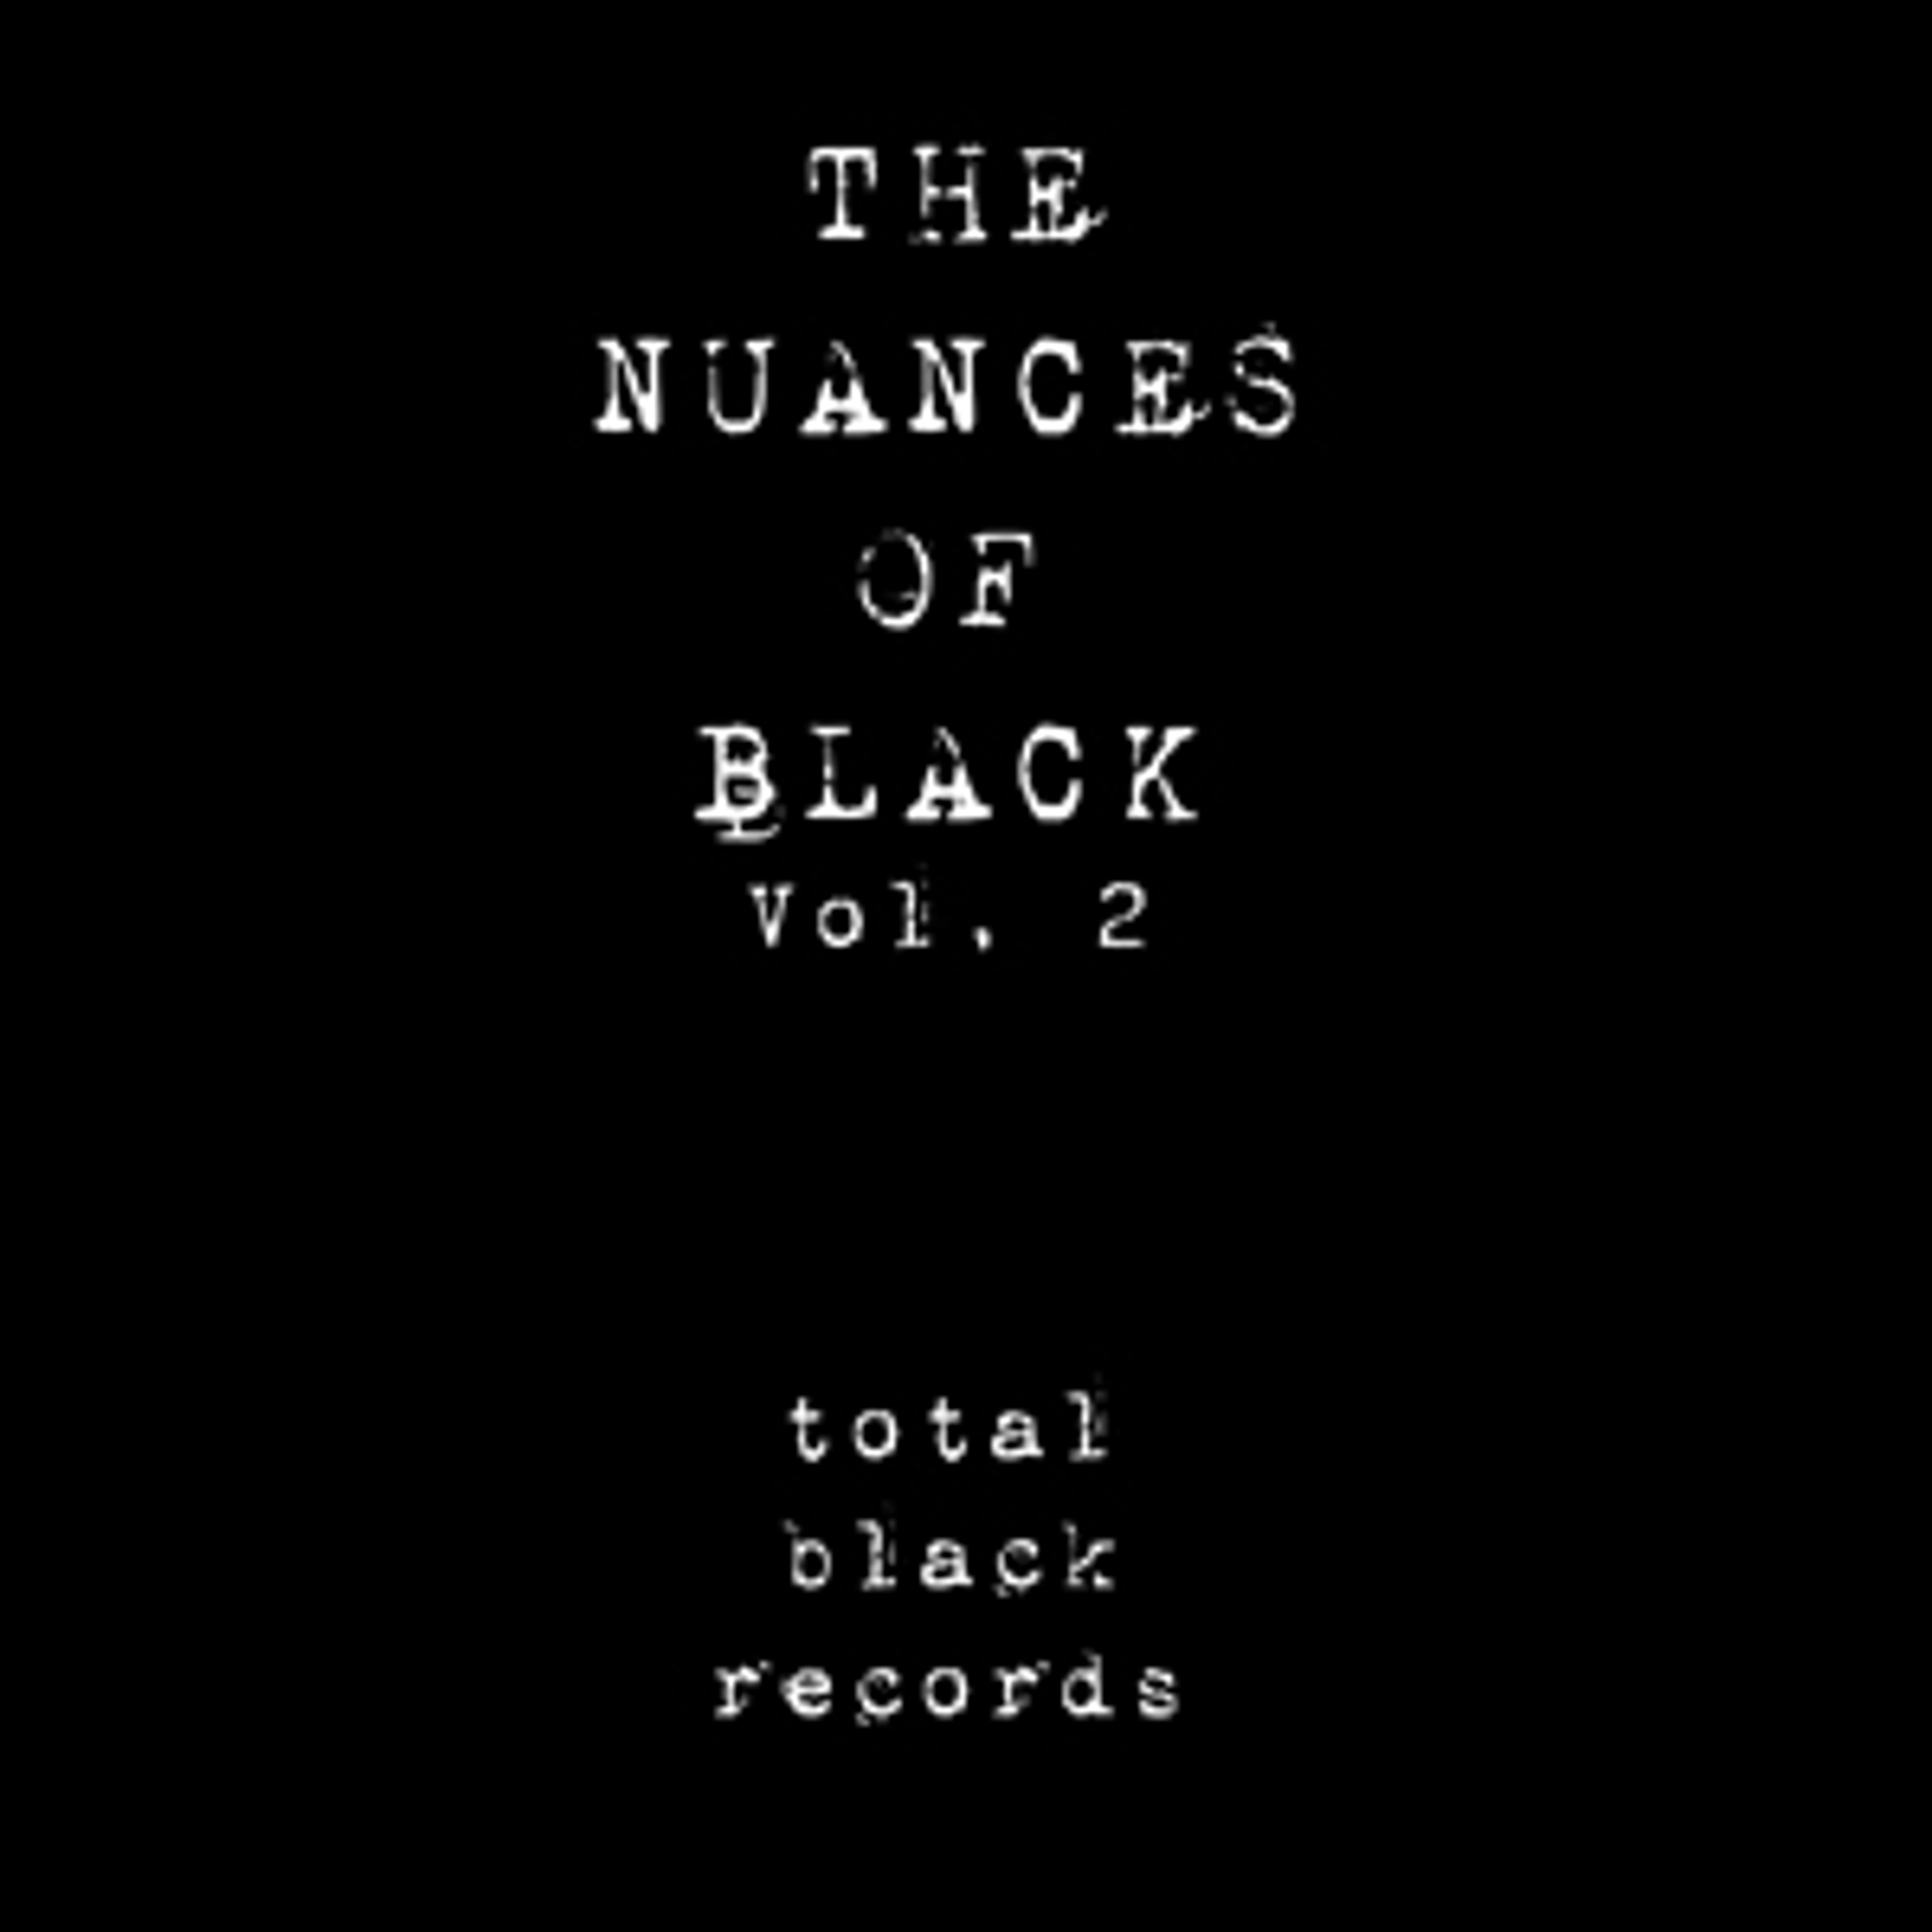 The Nuances of Black, Vol. 2